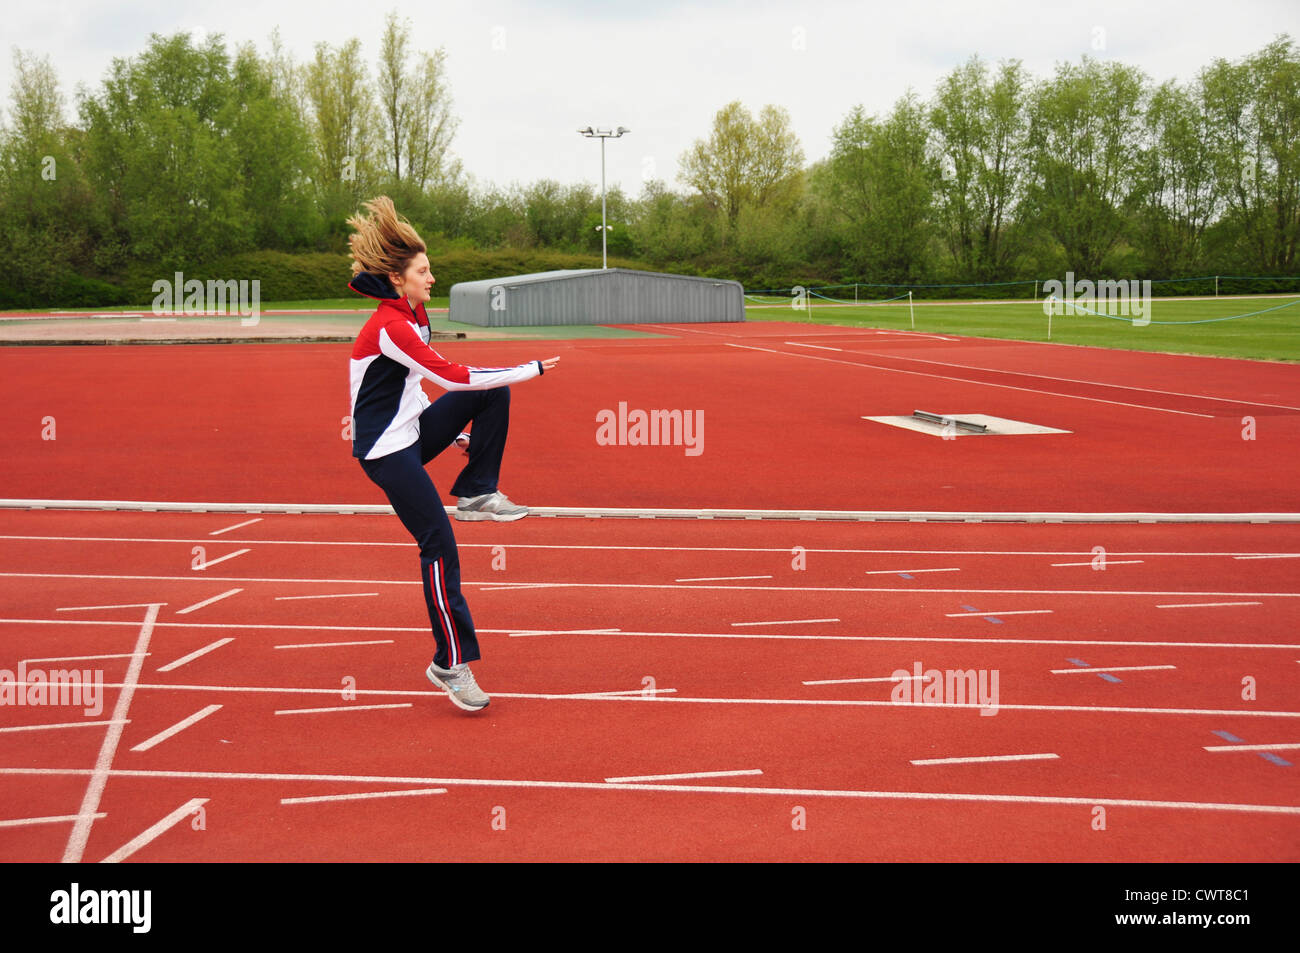 Atleta Femenina haciendo ejercicio, ejercicios, entrenamiento en la pista de atletismo Foto de stock